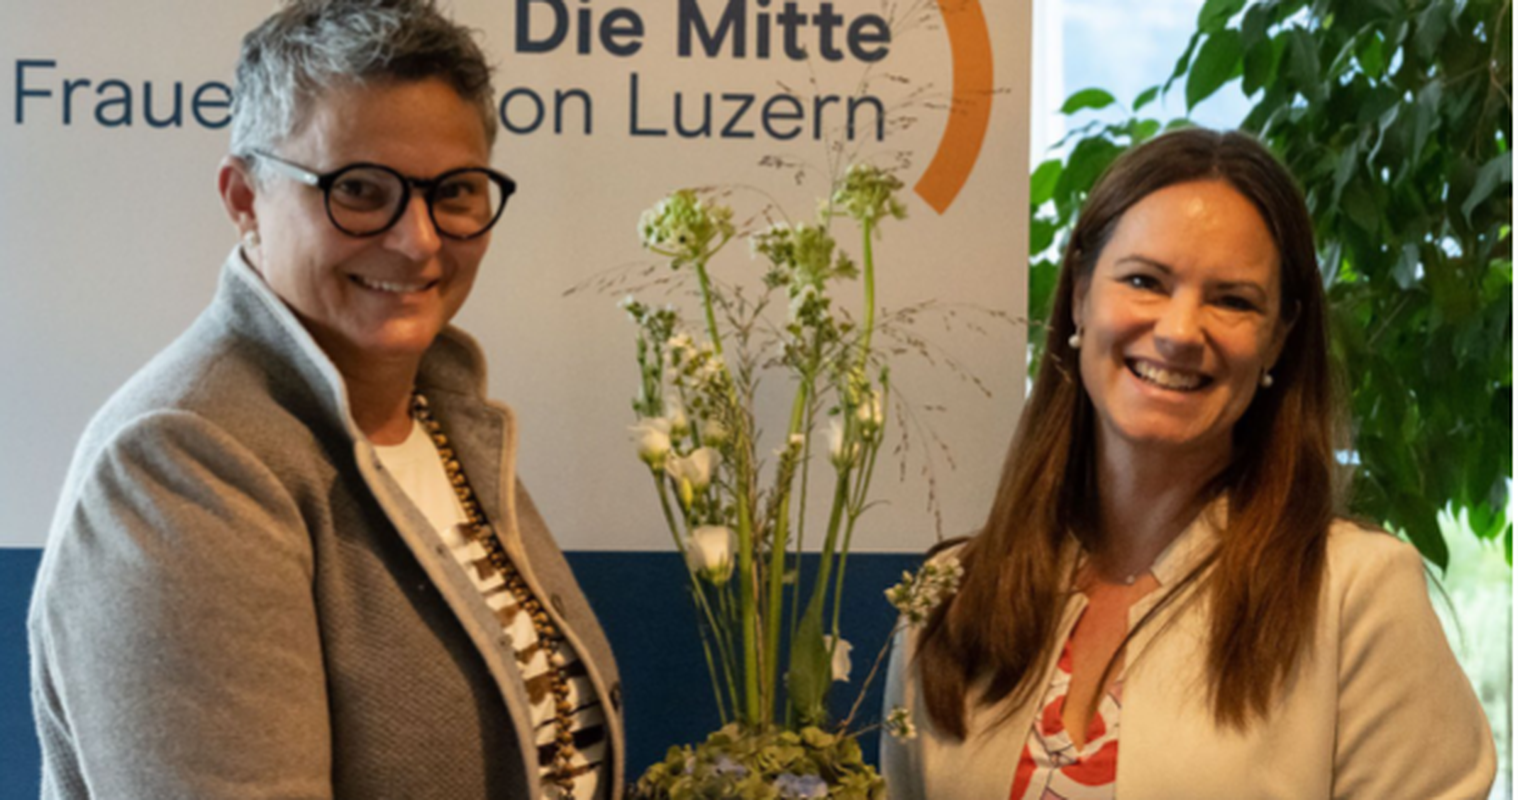 «Die Mitte» Kanton Luzern hat neu einen Frauen-Verein